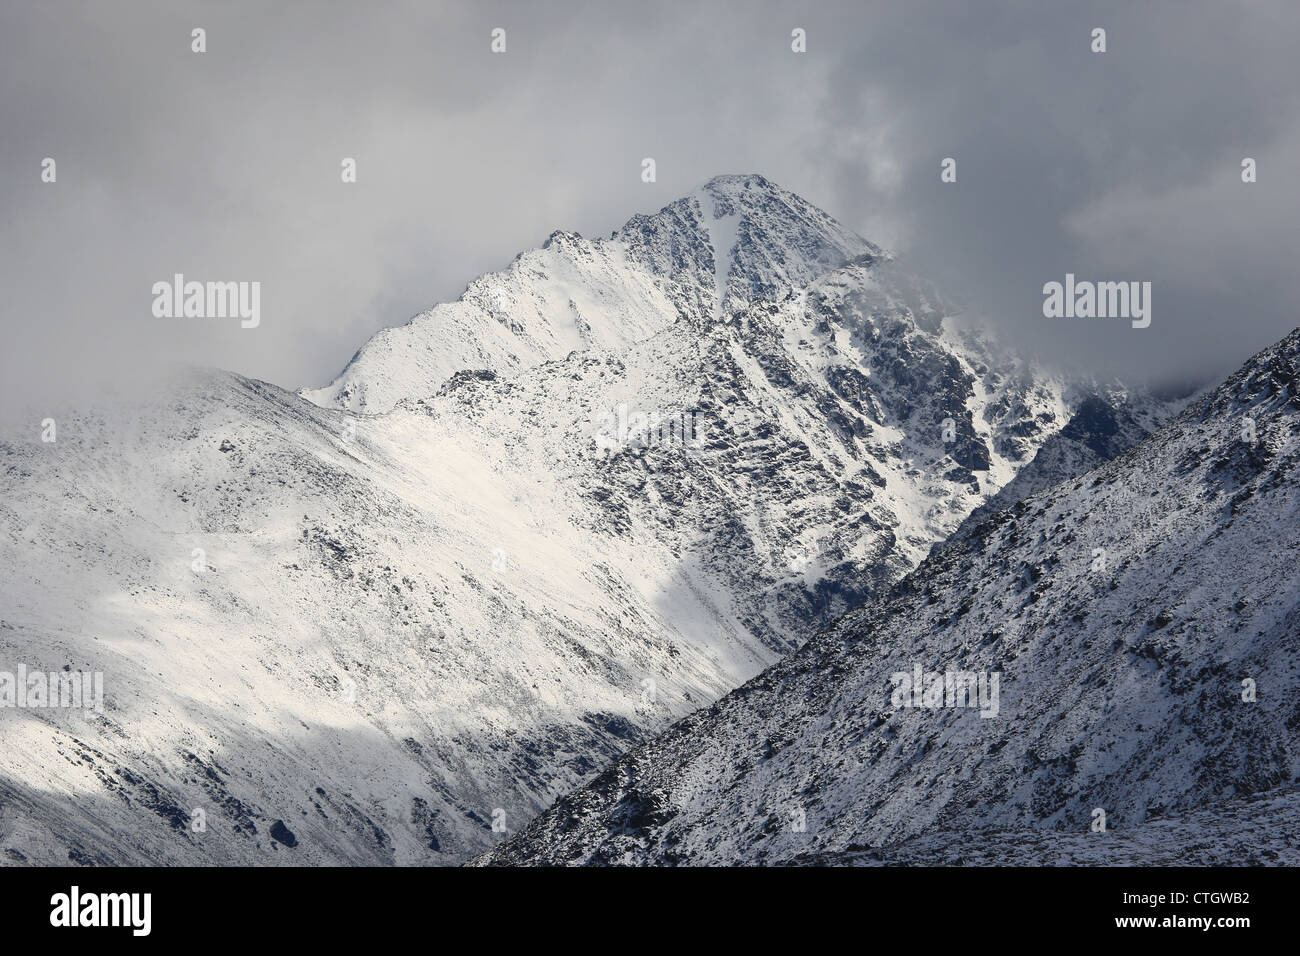 Nothern Chuya mountain ridge, Altai mountains, white silence, cloudy peaks Stock Photo